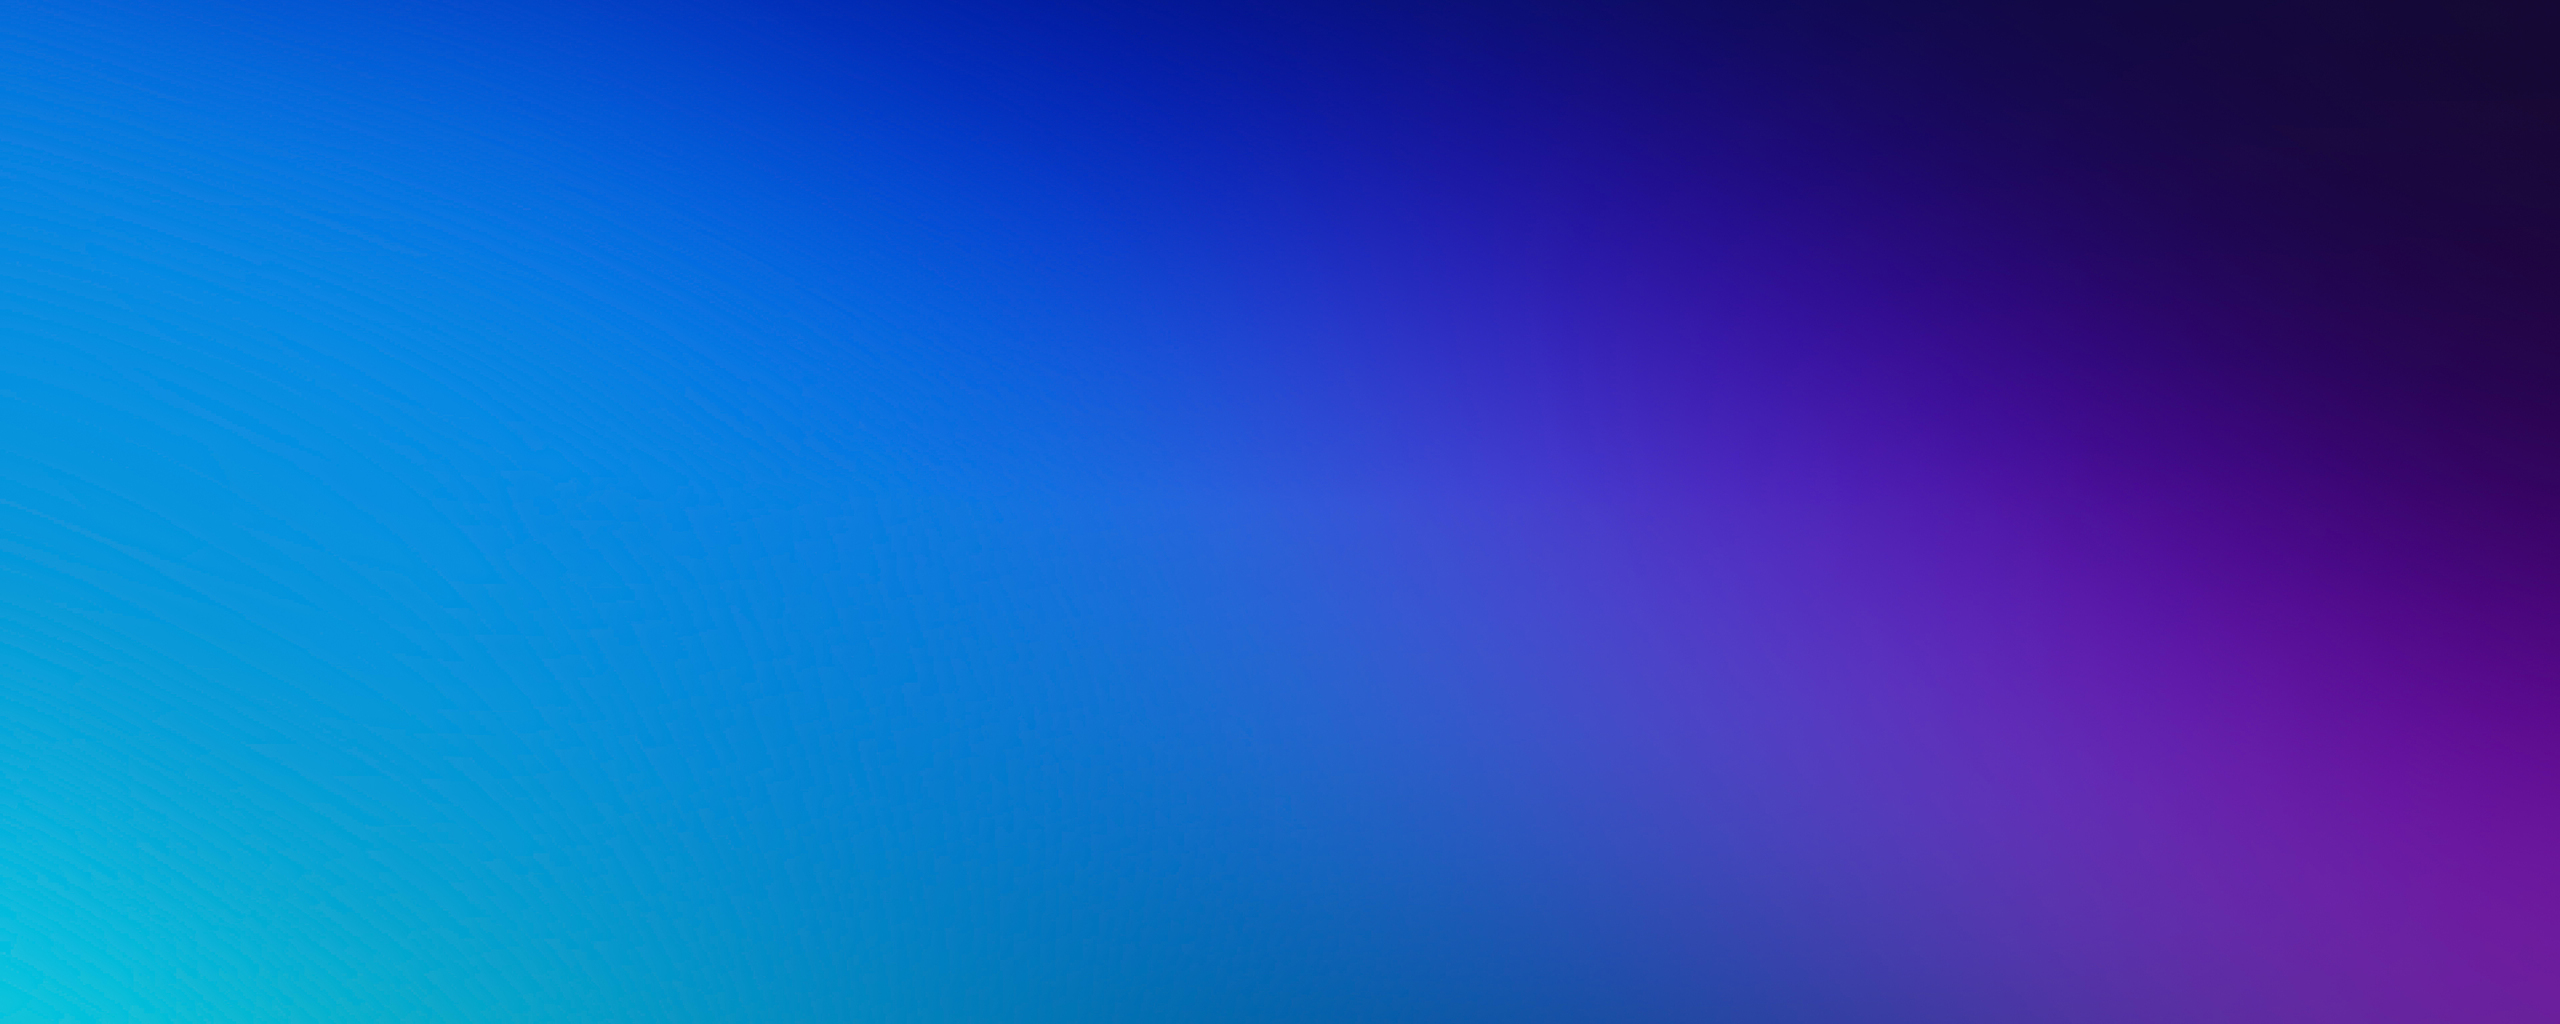 2560x1024 Green Blue Purple Blur 4k 2560x1024 Resolution HD 4k ...